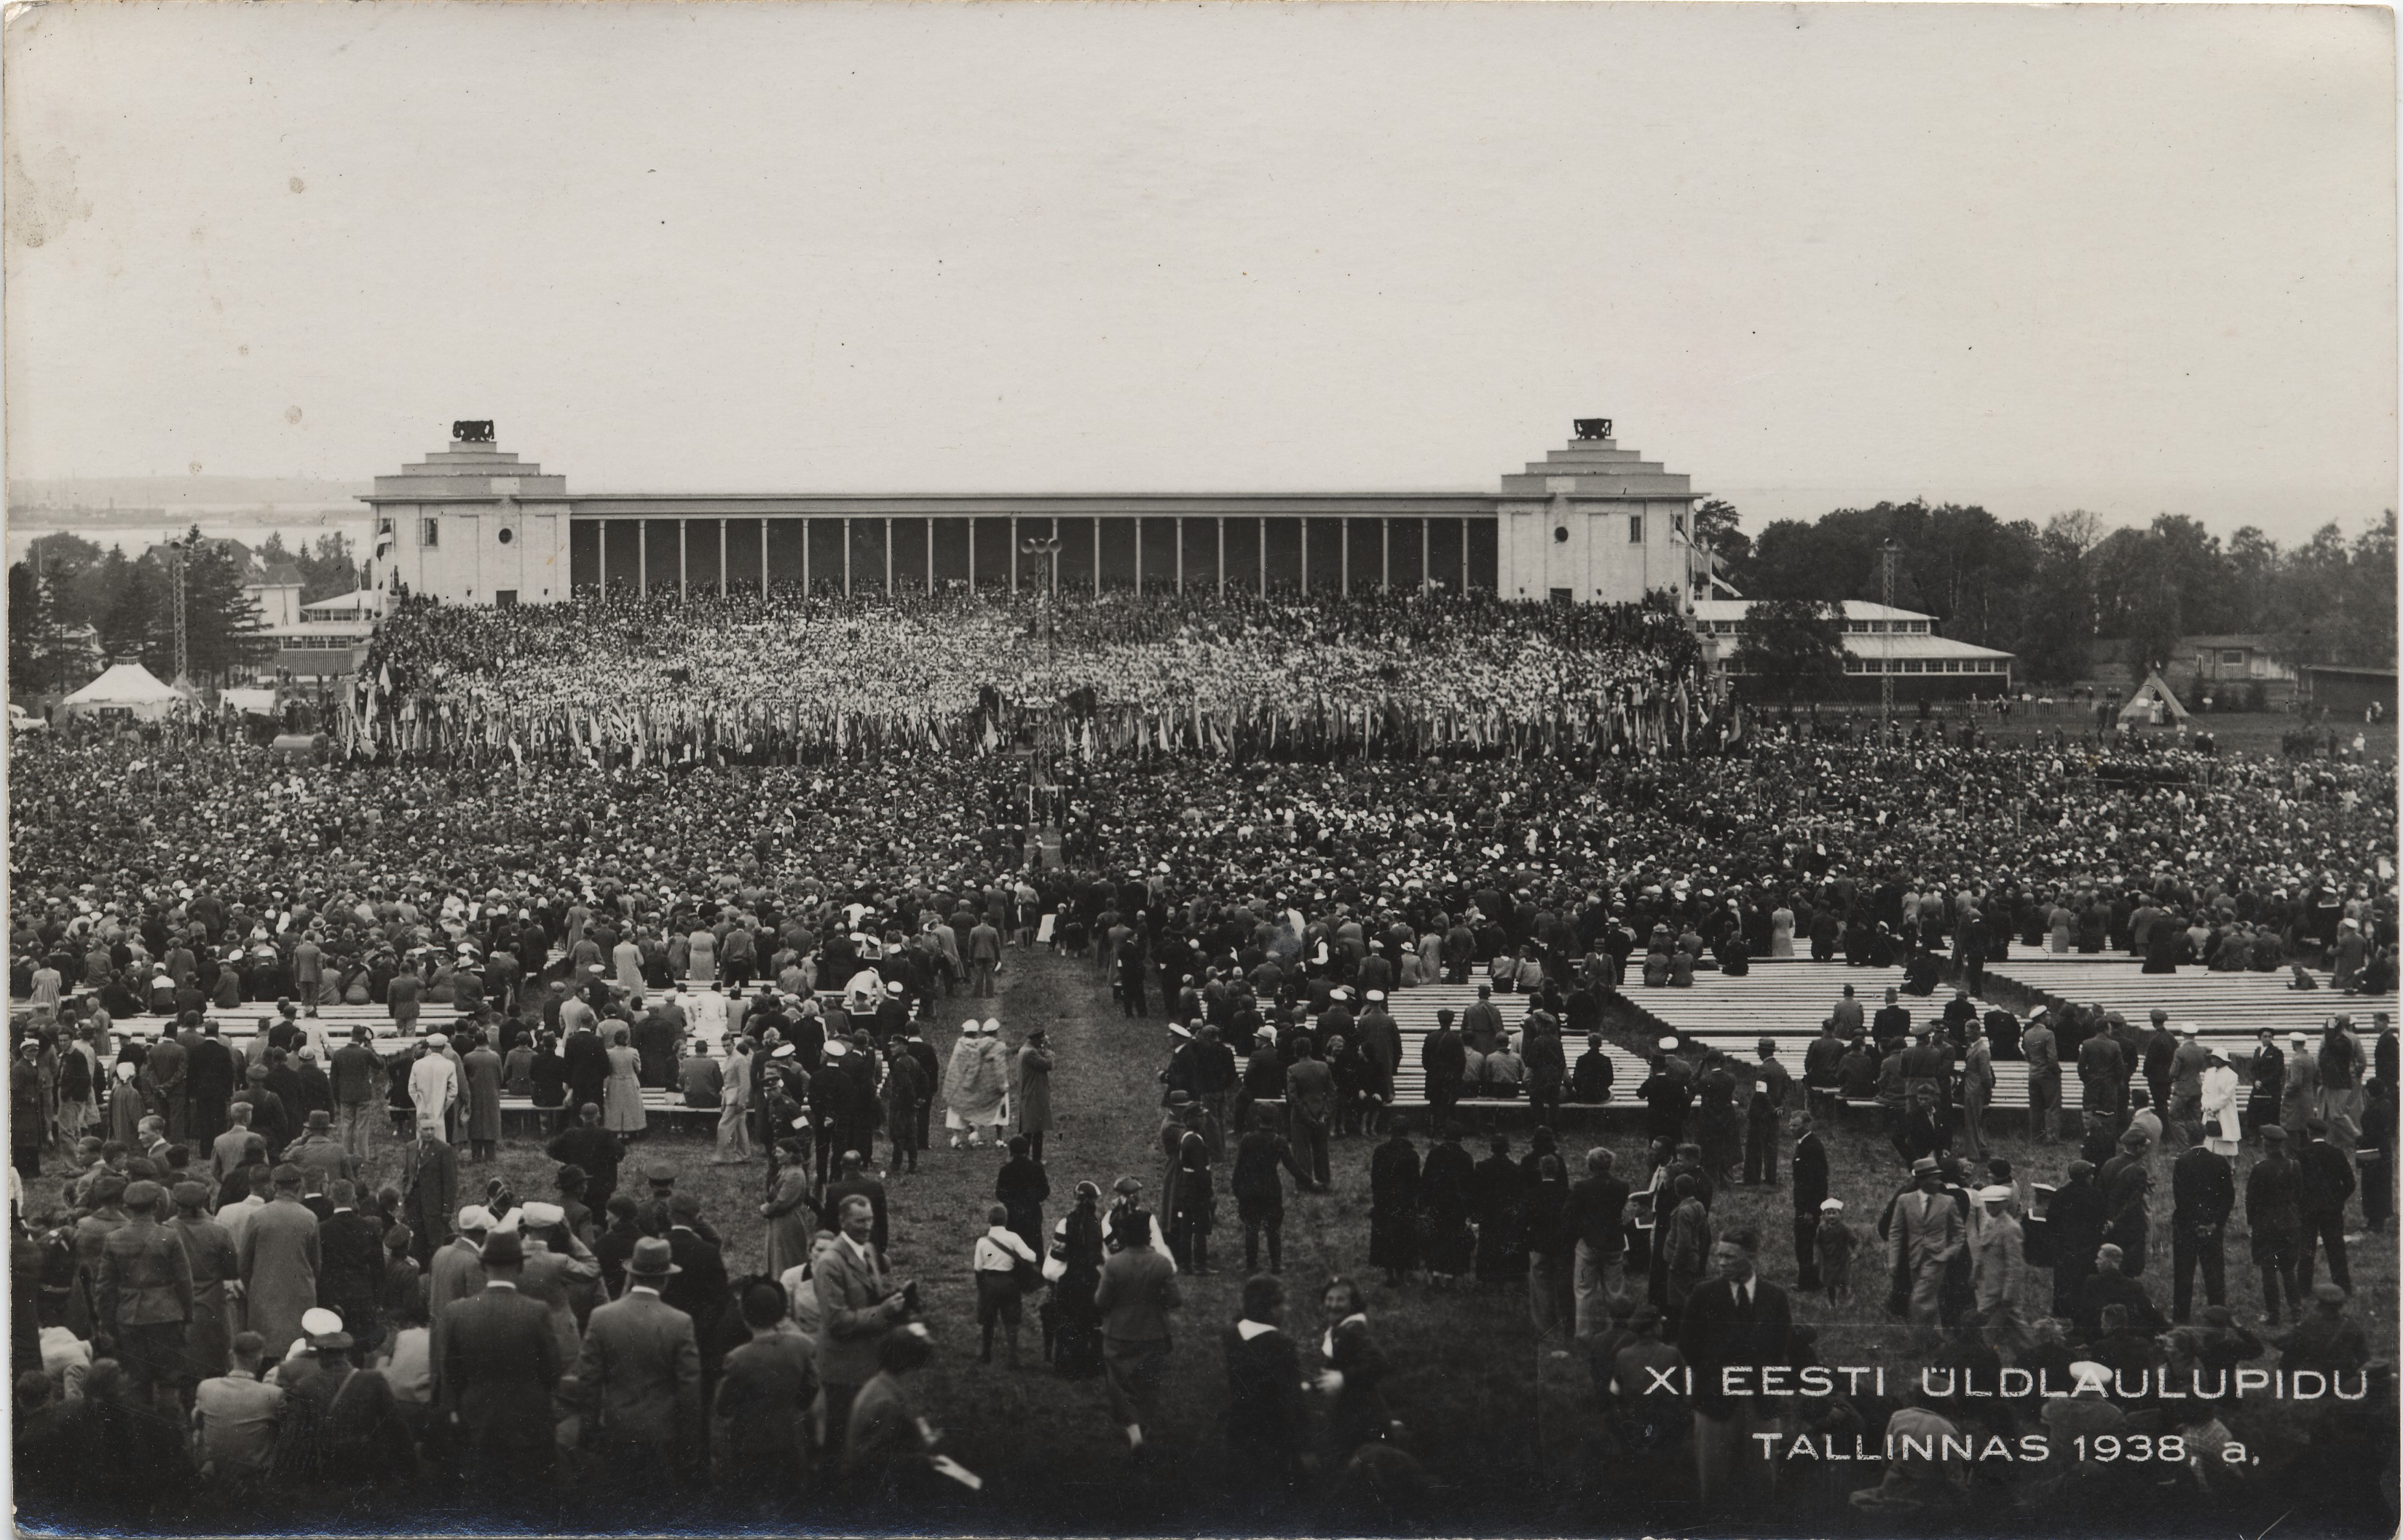 Xi Estonian General Song Festival in Tallinn in 1938